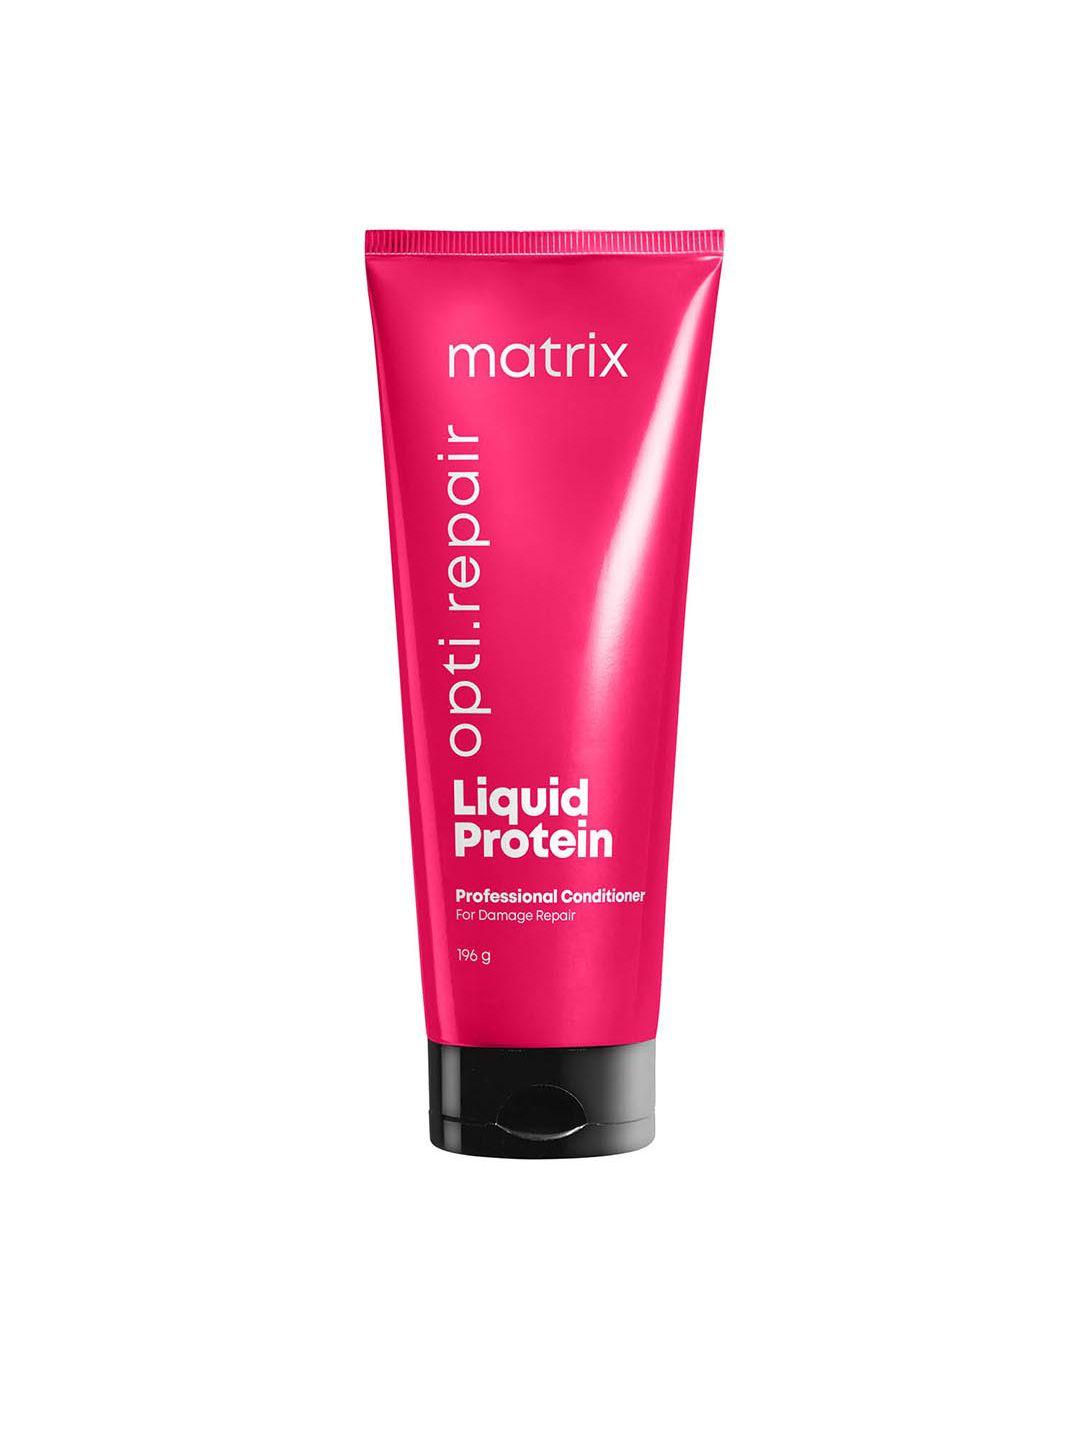 matrix opti repair liquid protein professional conditioner for damage repair - 196 g